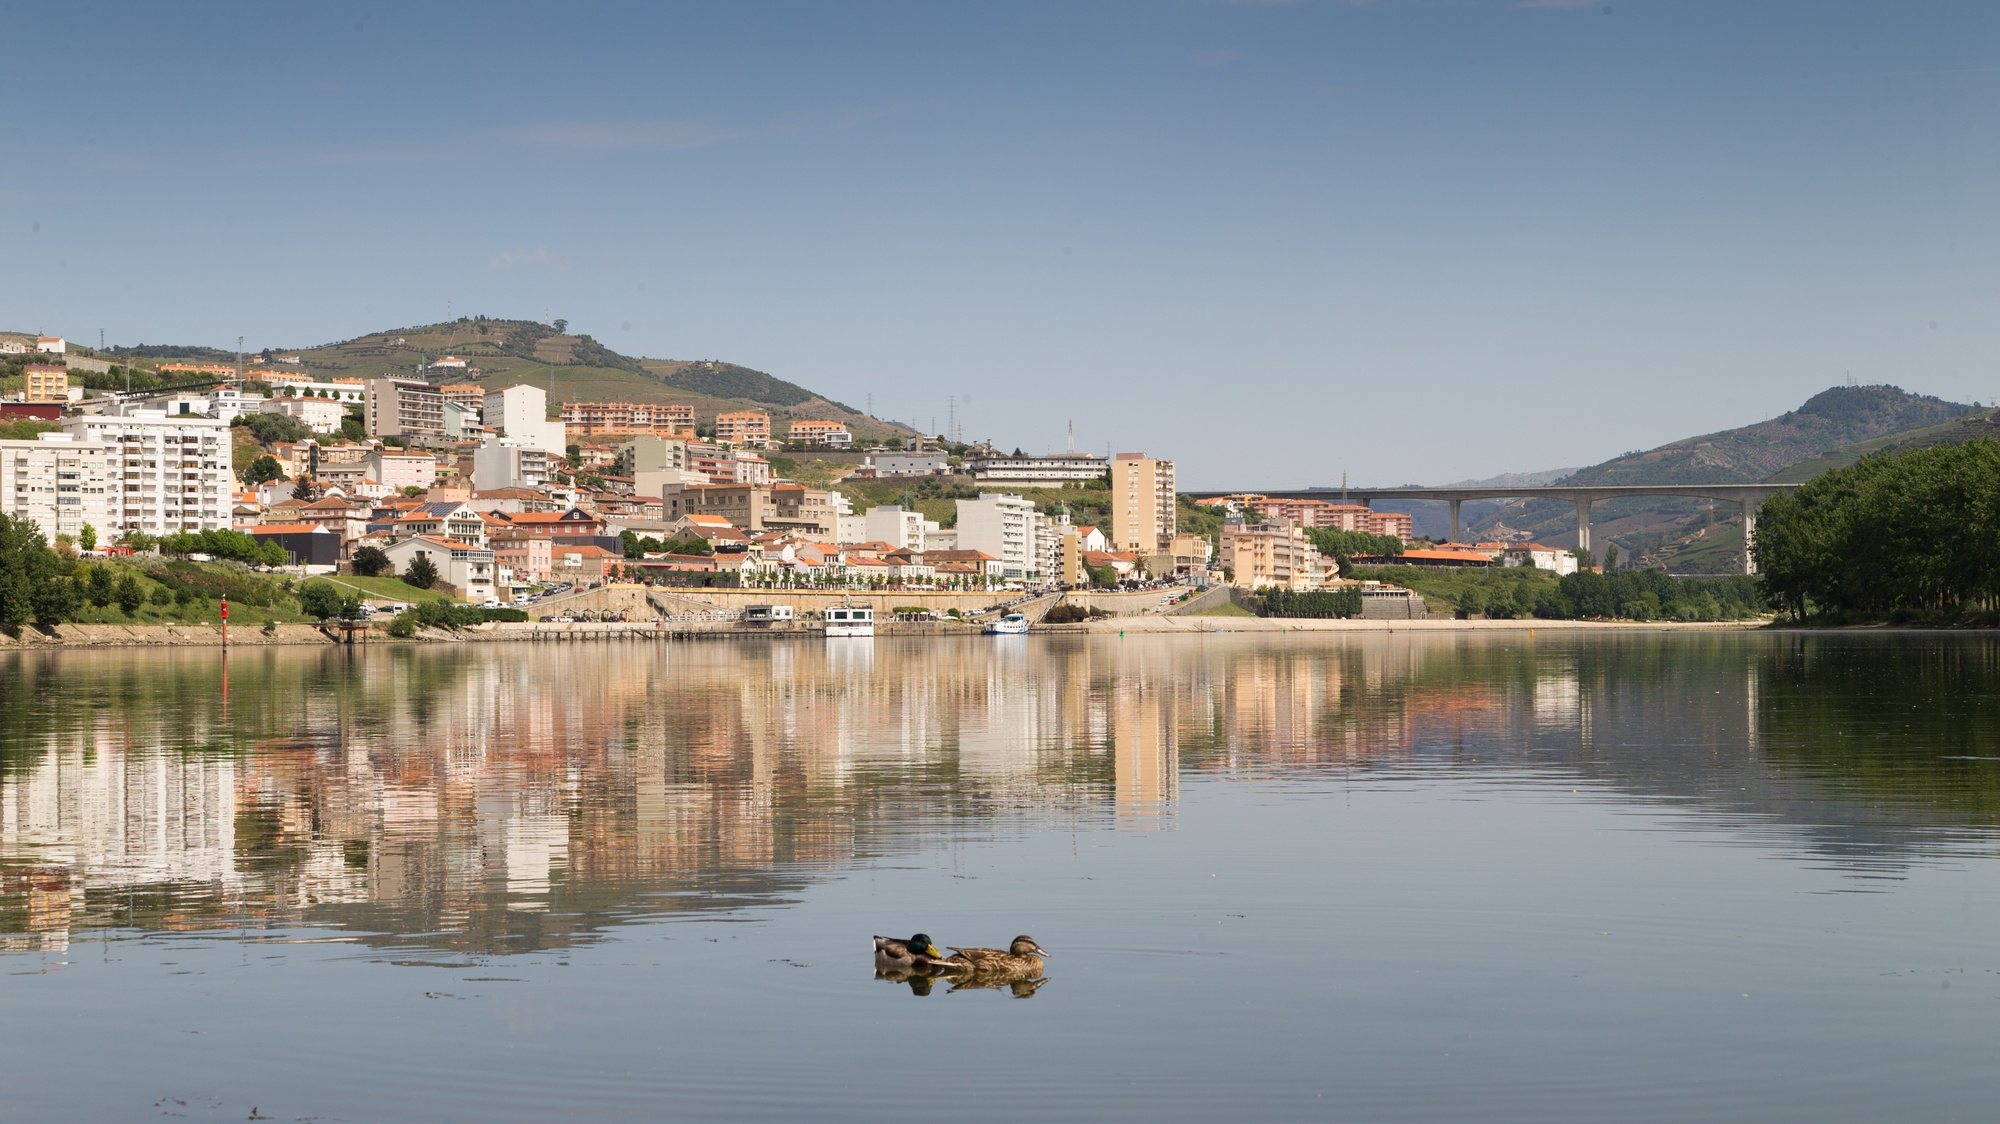 Marginal do rio Douro em Peso da Régua, distrito de Vila Real, 21 de abril de 2017. PEDRO SARMENTO COSTA / LUSA